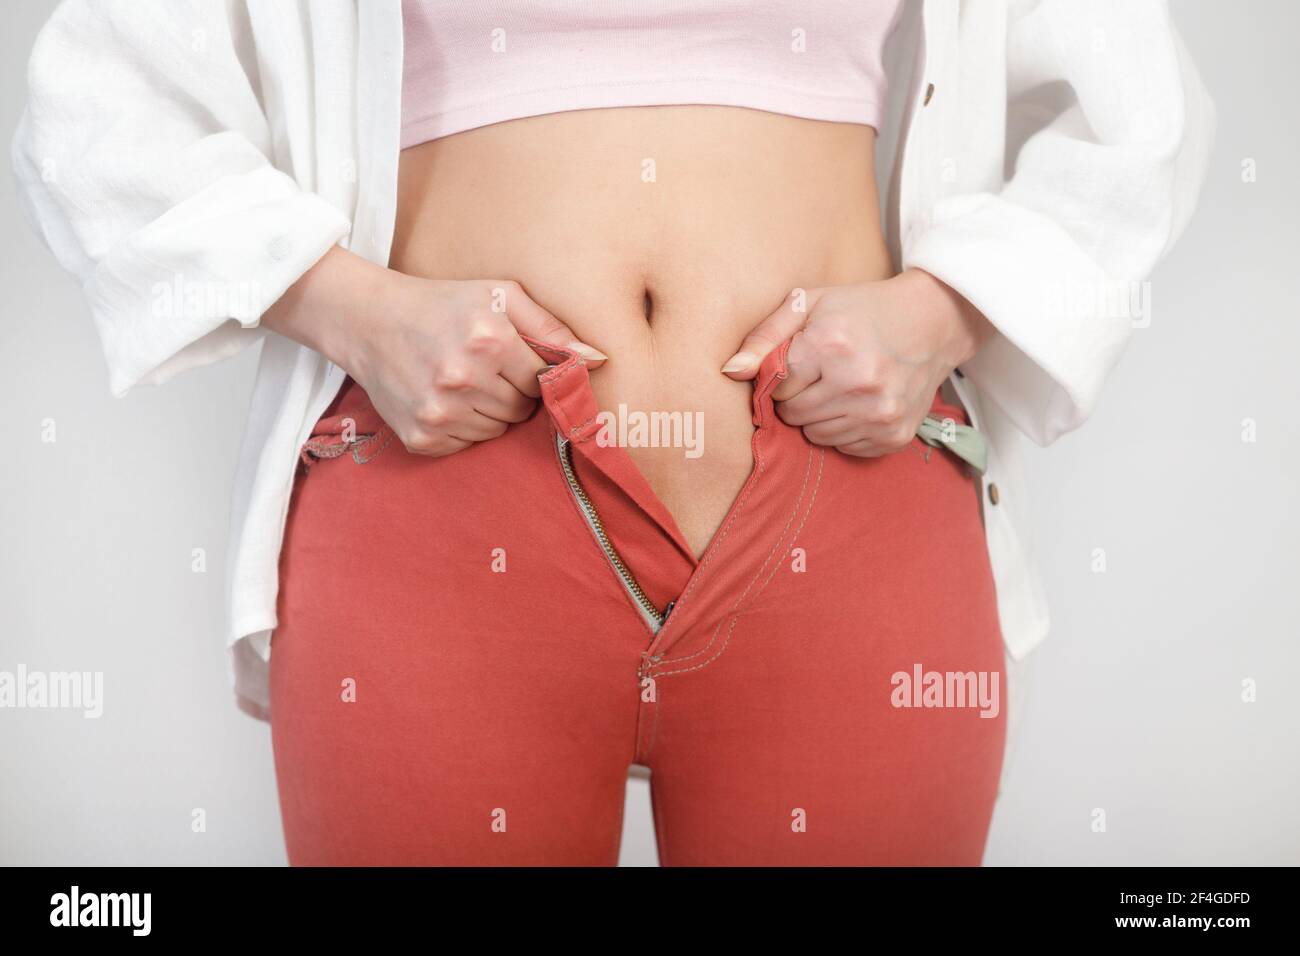 Gros plan de la graisse d'estomac la femme ne peut pas attacher une fermeture à glissière sur les jeans. Régime, poids corporel, concept d'obésité. Banque D'Images